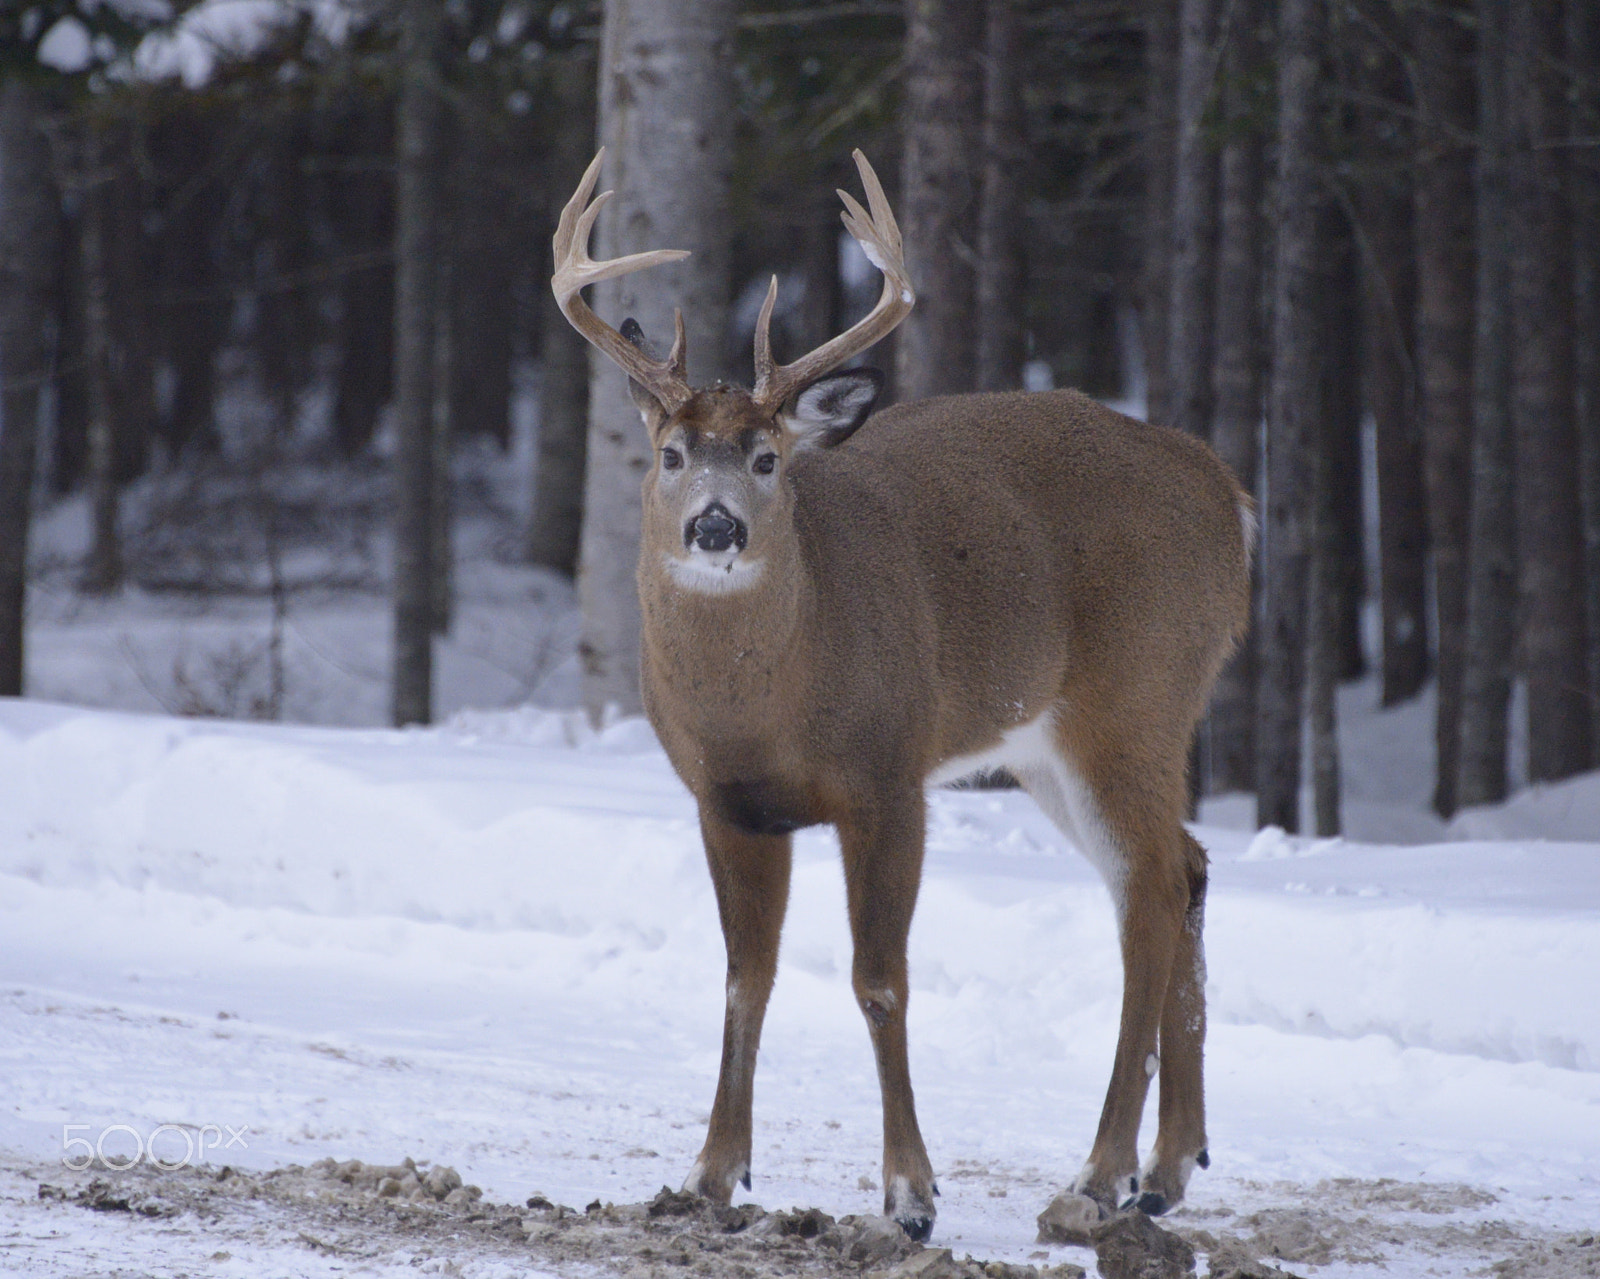 Nikon AF-S Nikkor 28-300mm F3.5-5.6G ED VR sample photo. Maine whitetail deer photography